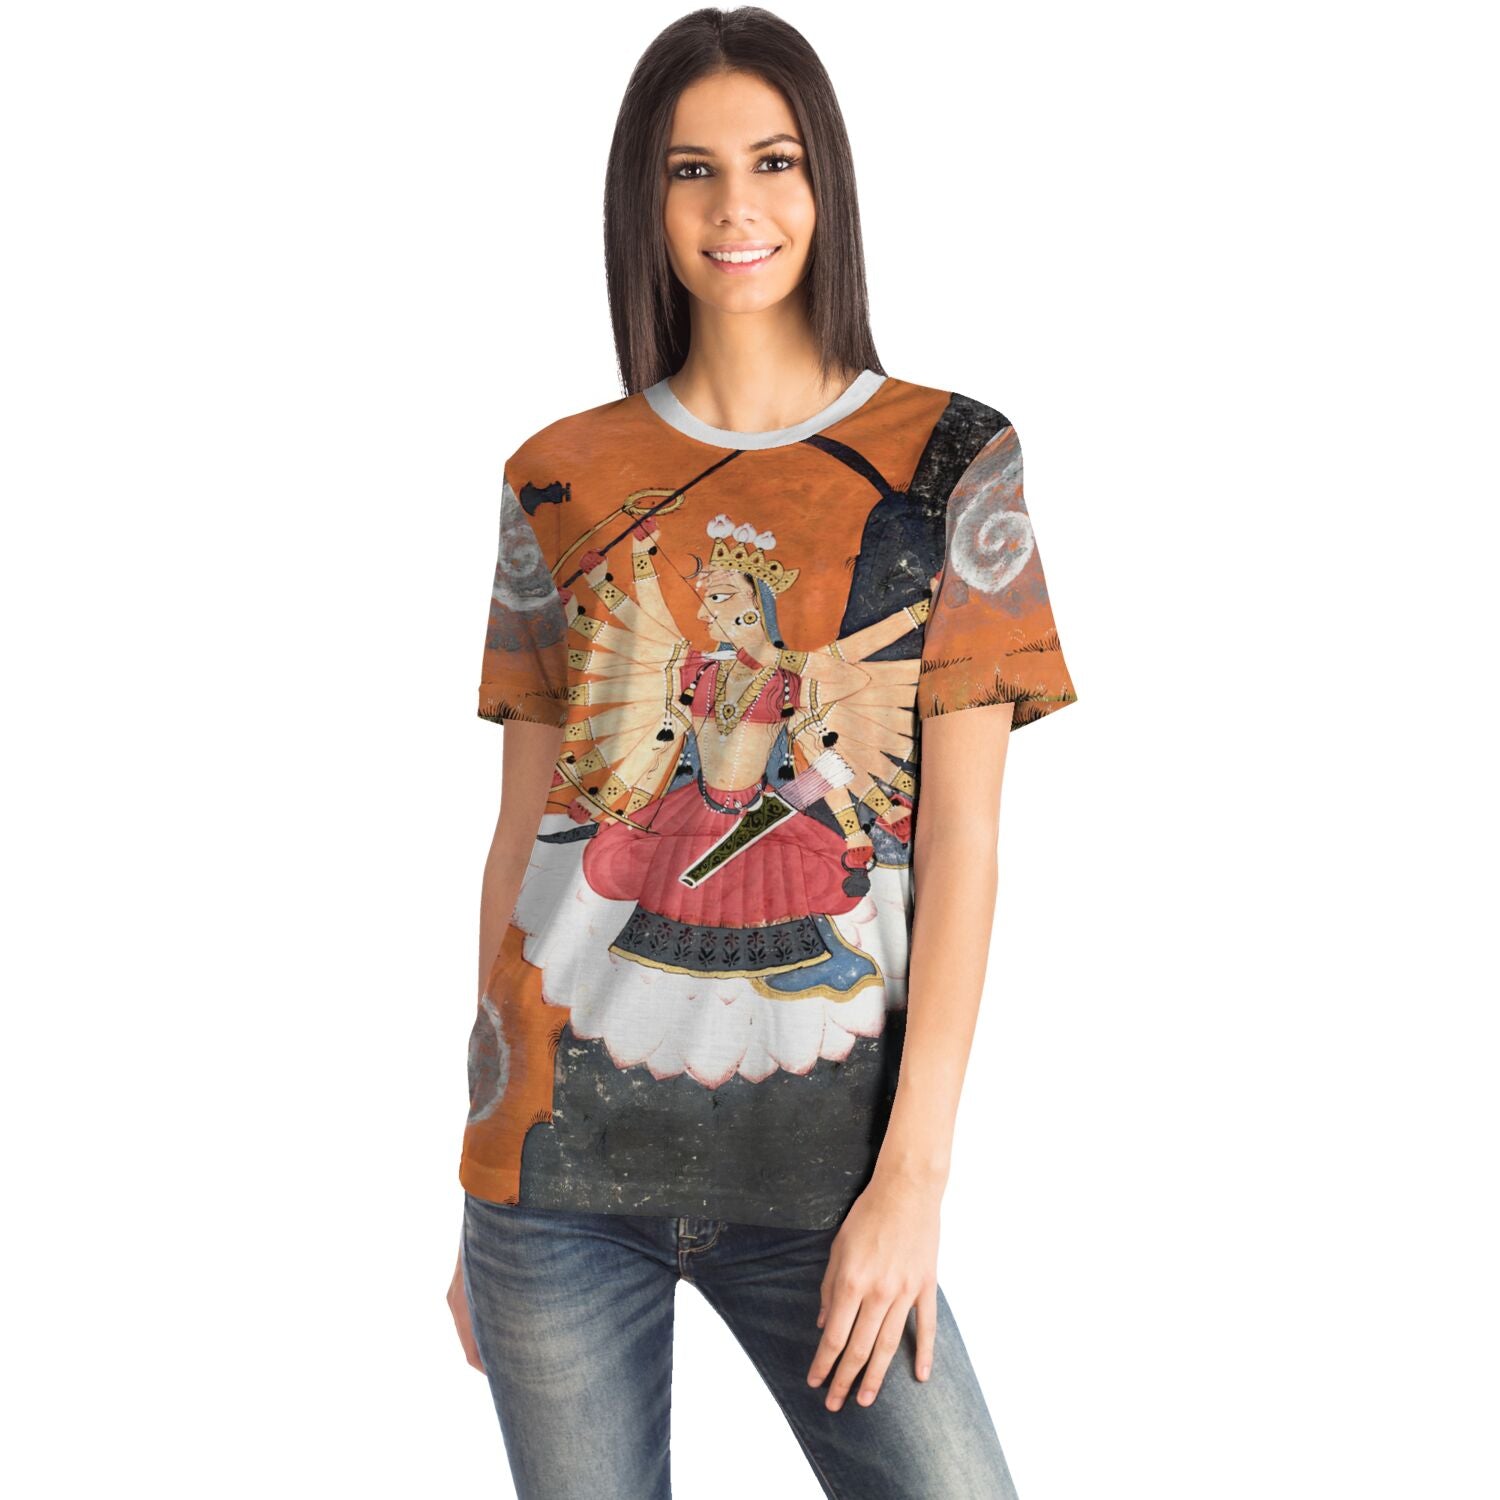 T-shirt Kali Shakti Durga Slaying the Buffalo Demon Asura, Mahishasura | Goddess Parvati Durga Devi Graphic Art T-Shirt